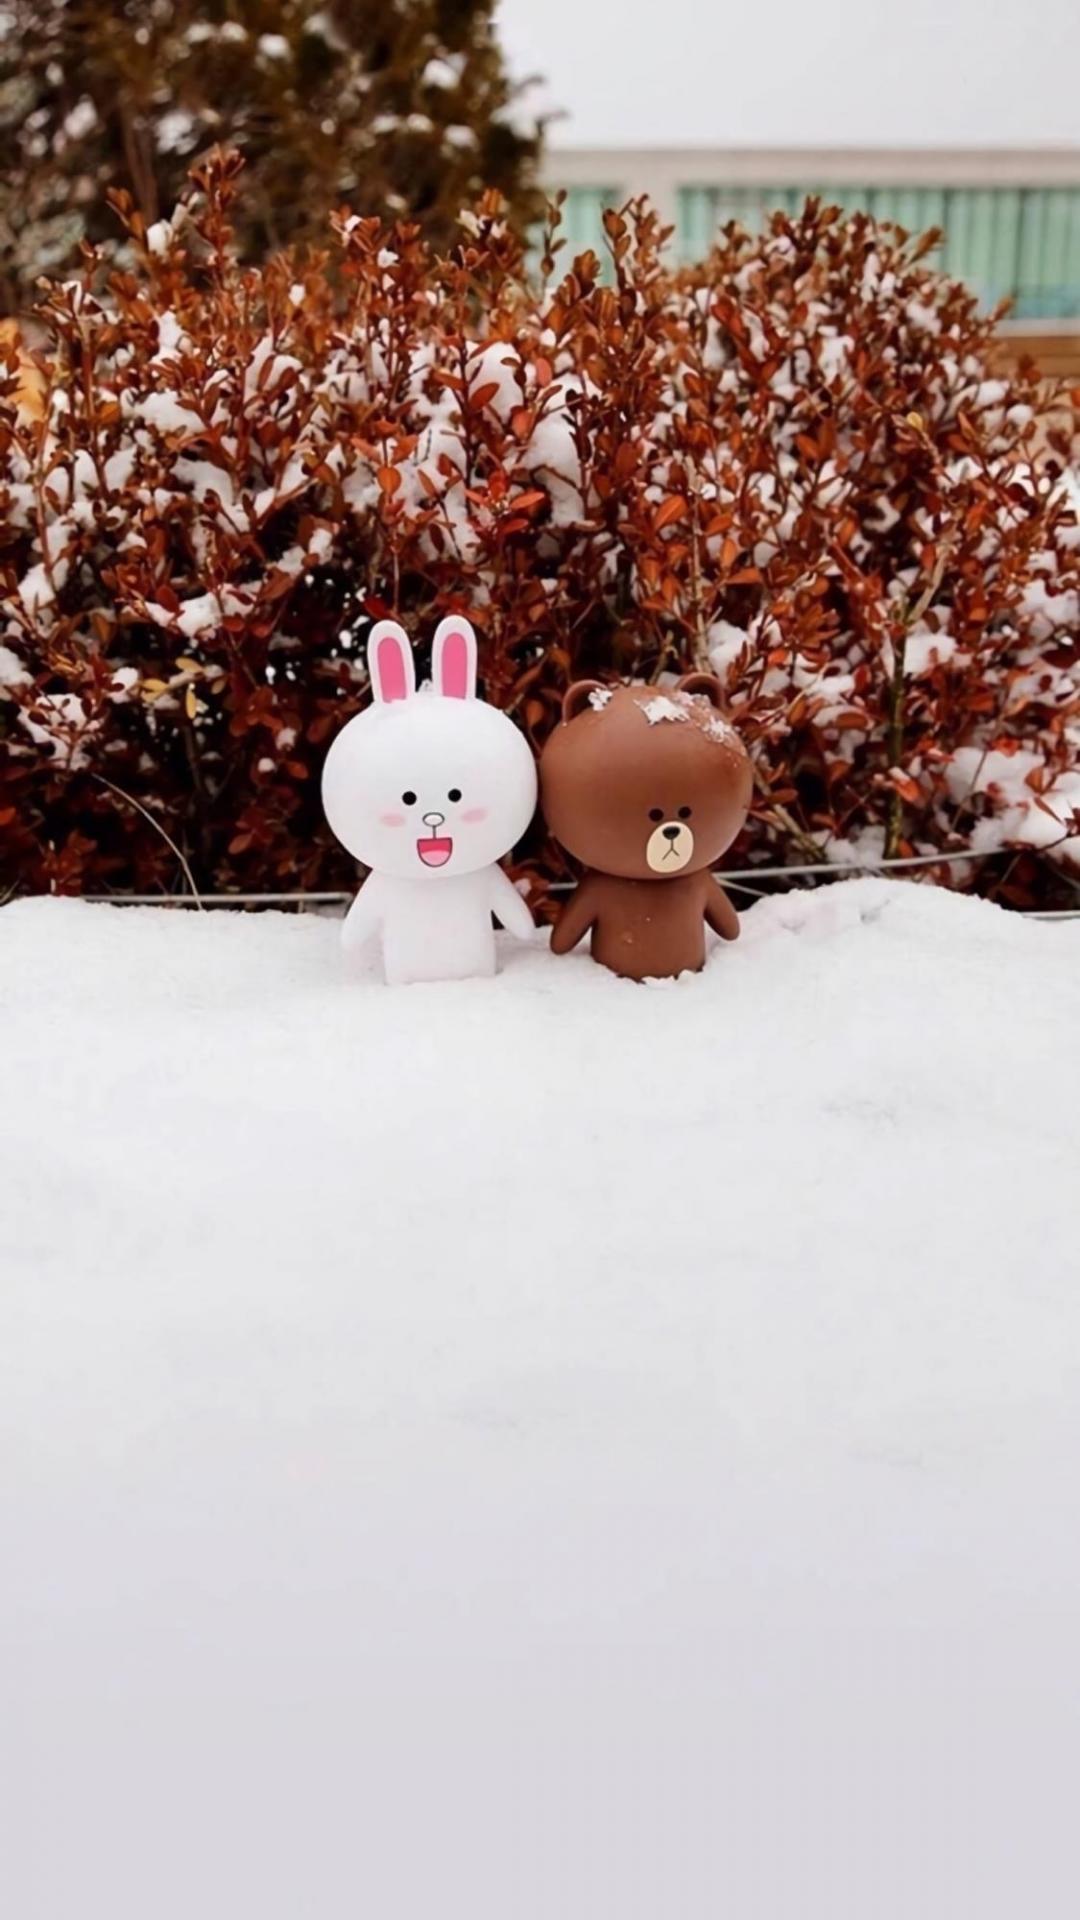 雪地里可爱的心心兔和布朗熊